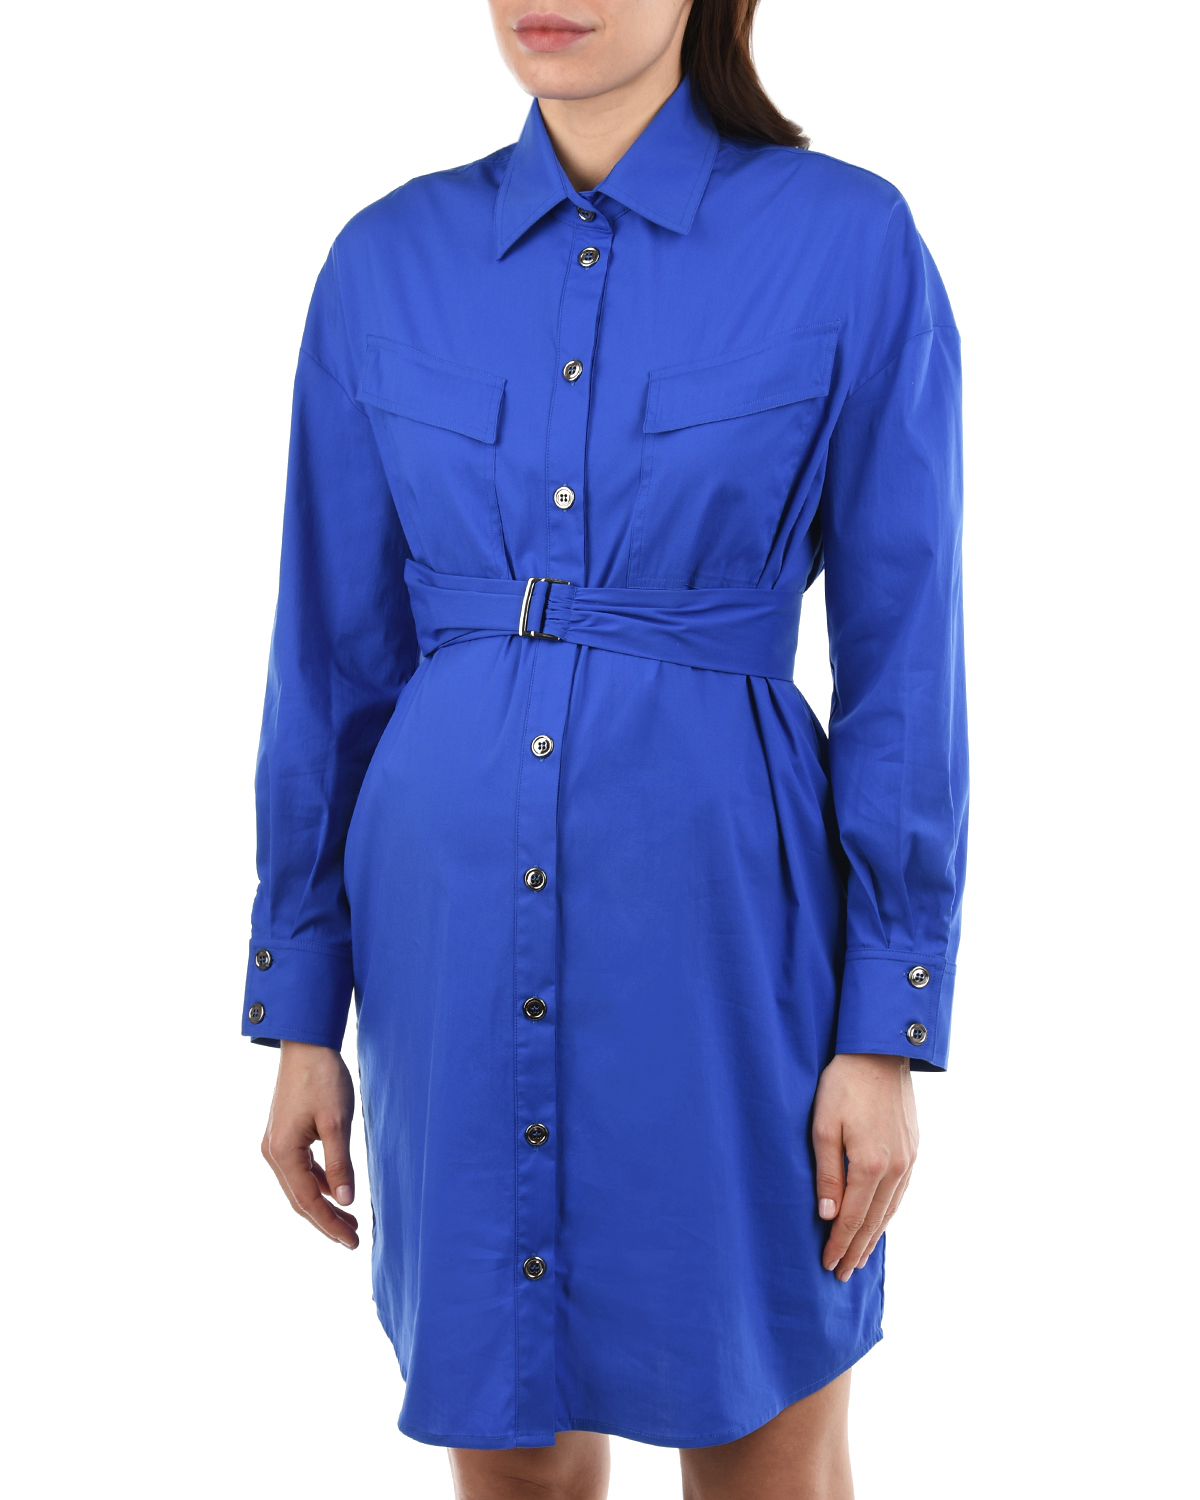 Синее платье-рубашка OLIMPIA Pietro Brunelli, размер 40, цвет синий - фото 8